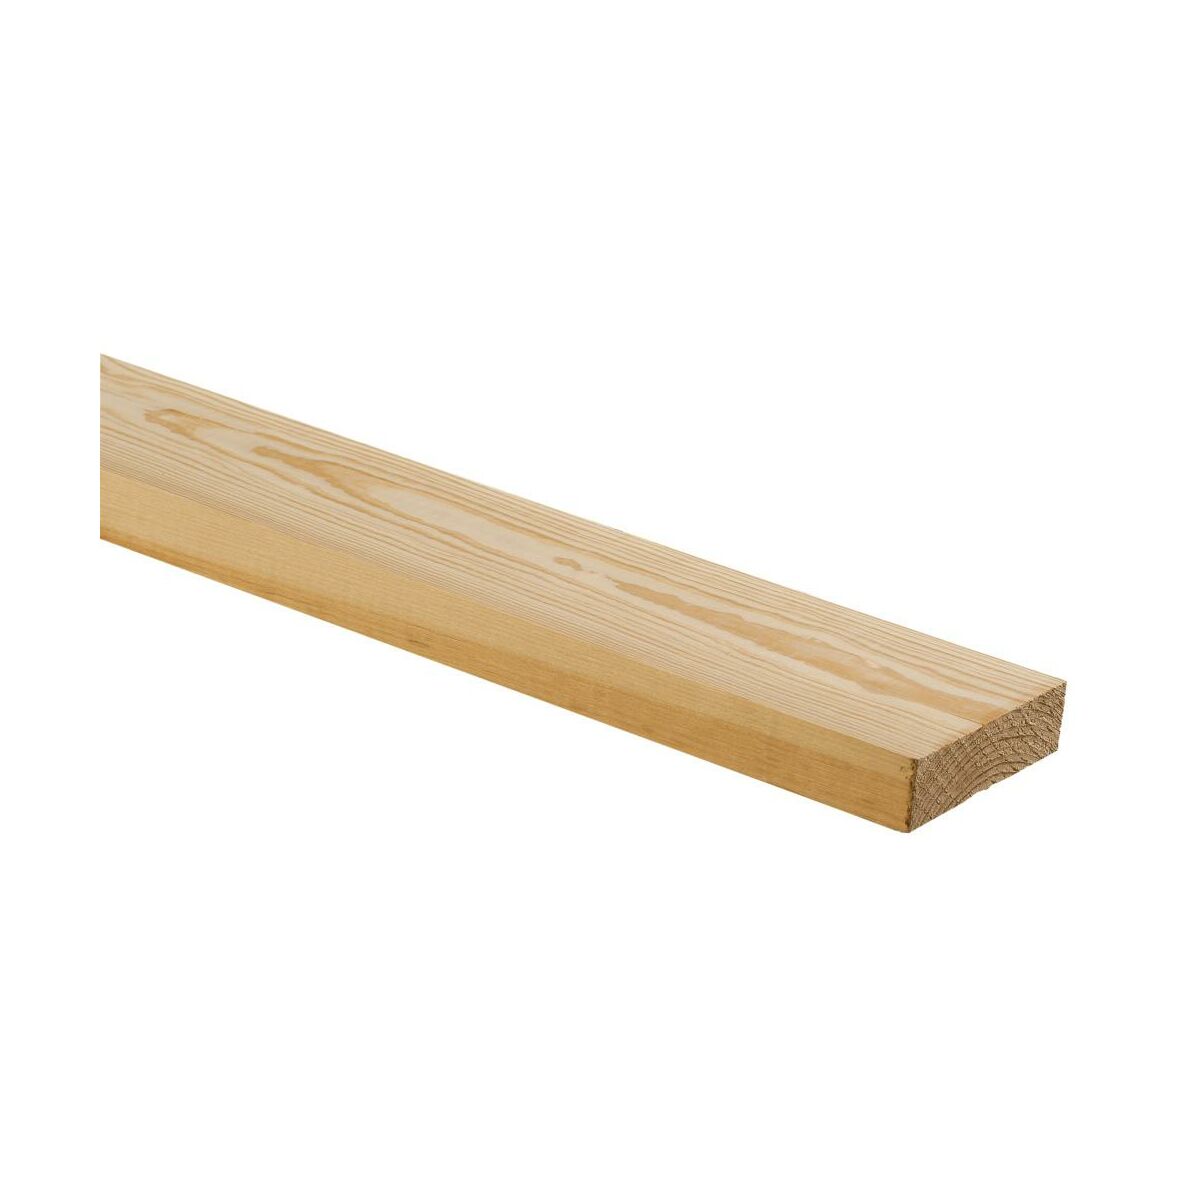 Drewno konstrukcyjne nieheblowane sosnowe surowe 30x100x2500 mm